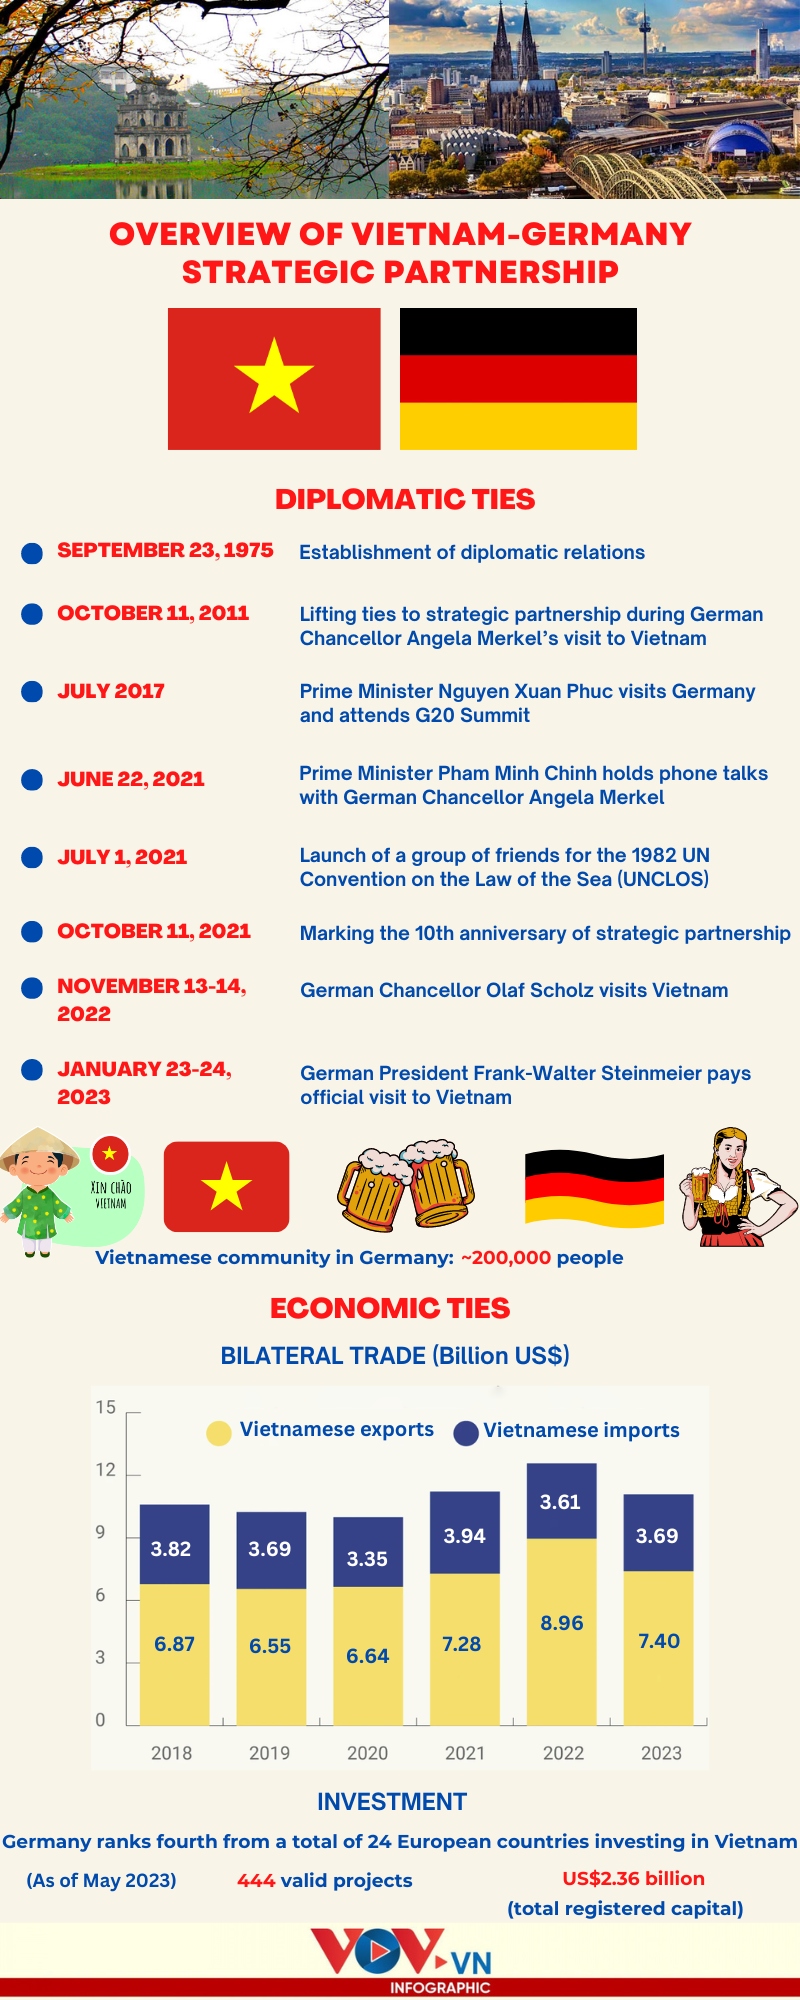 major milestones in vietnam-germany strategic partnership picture 1